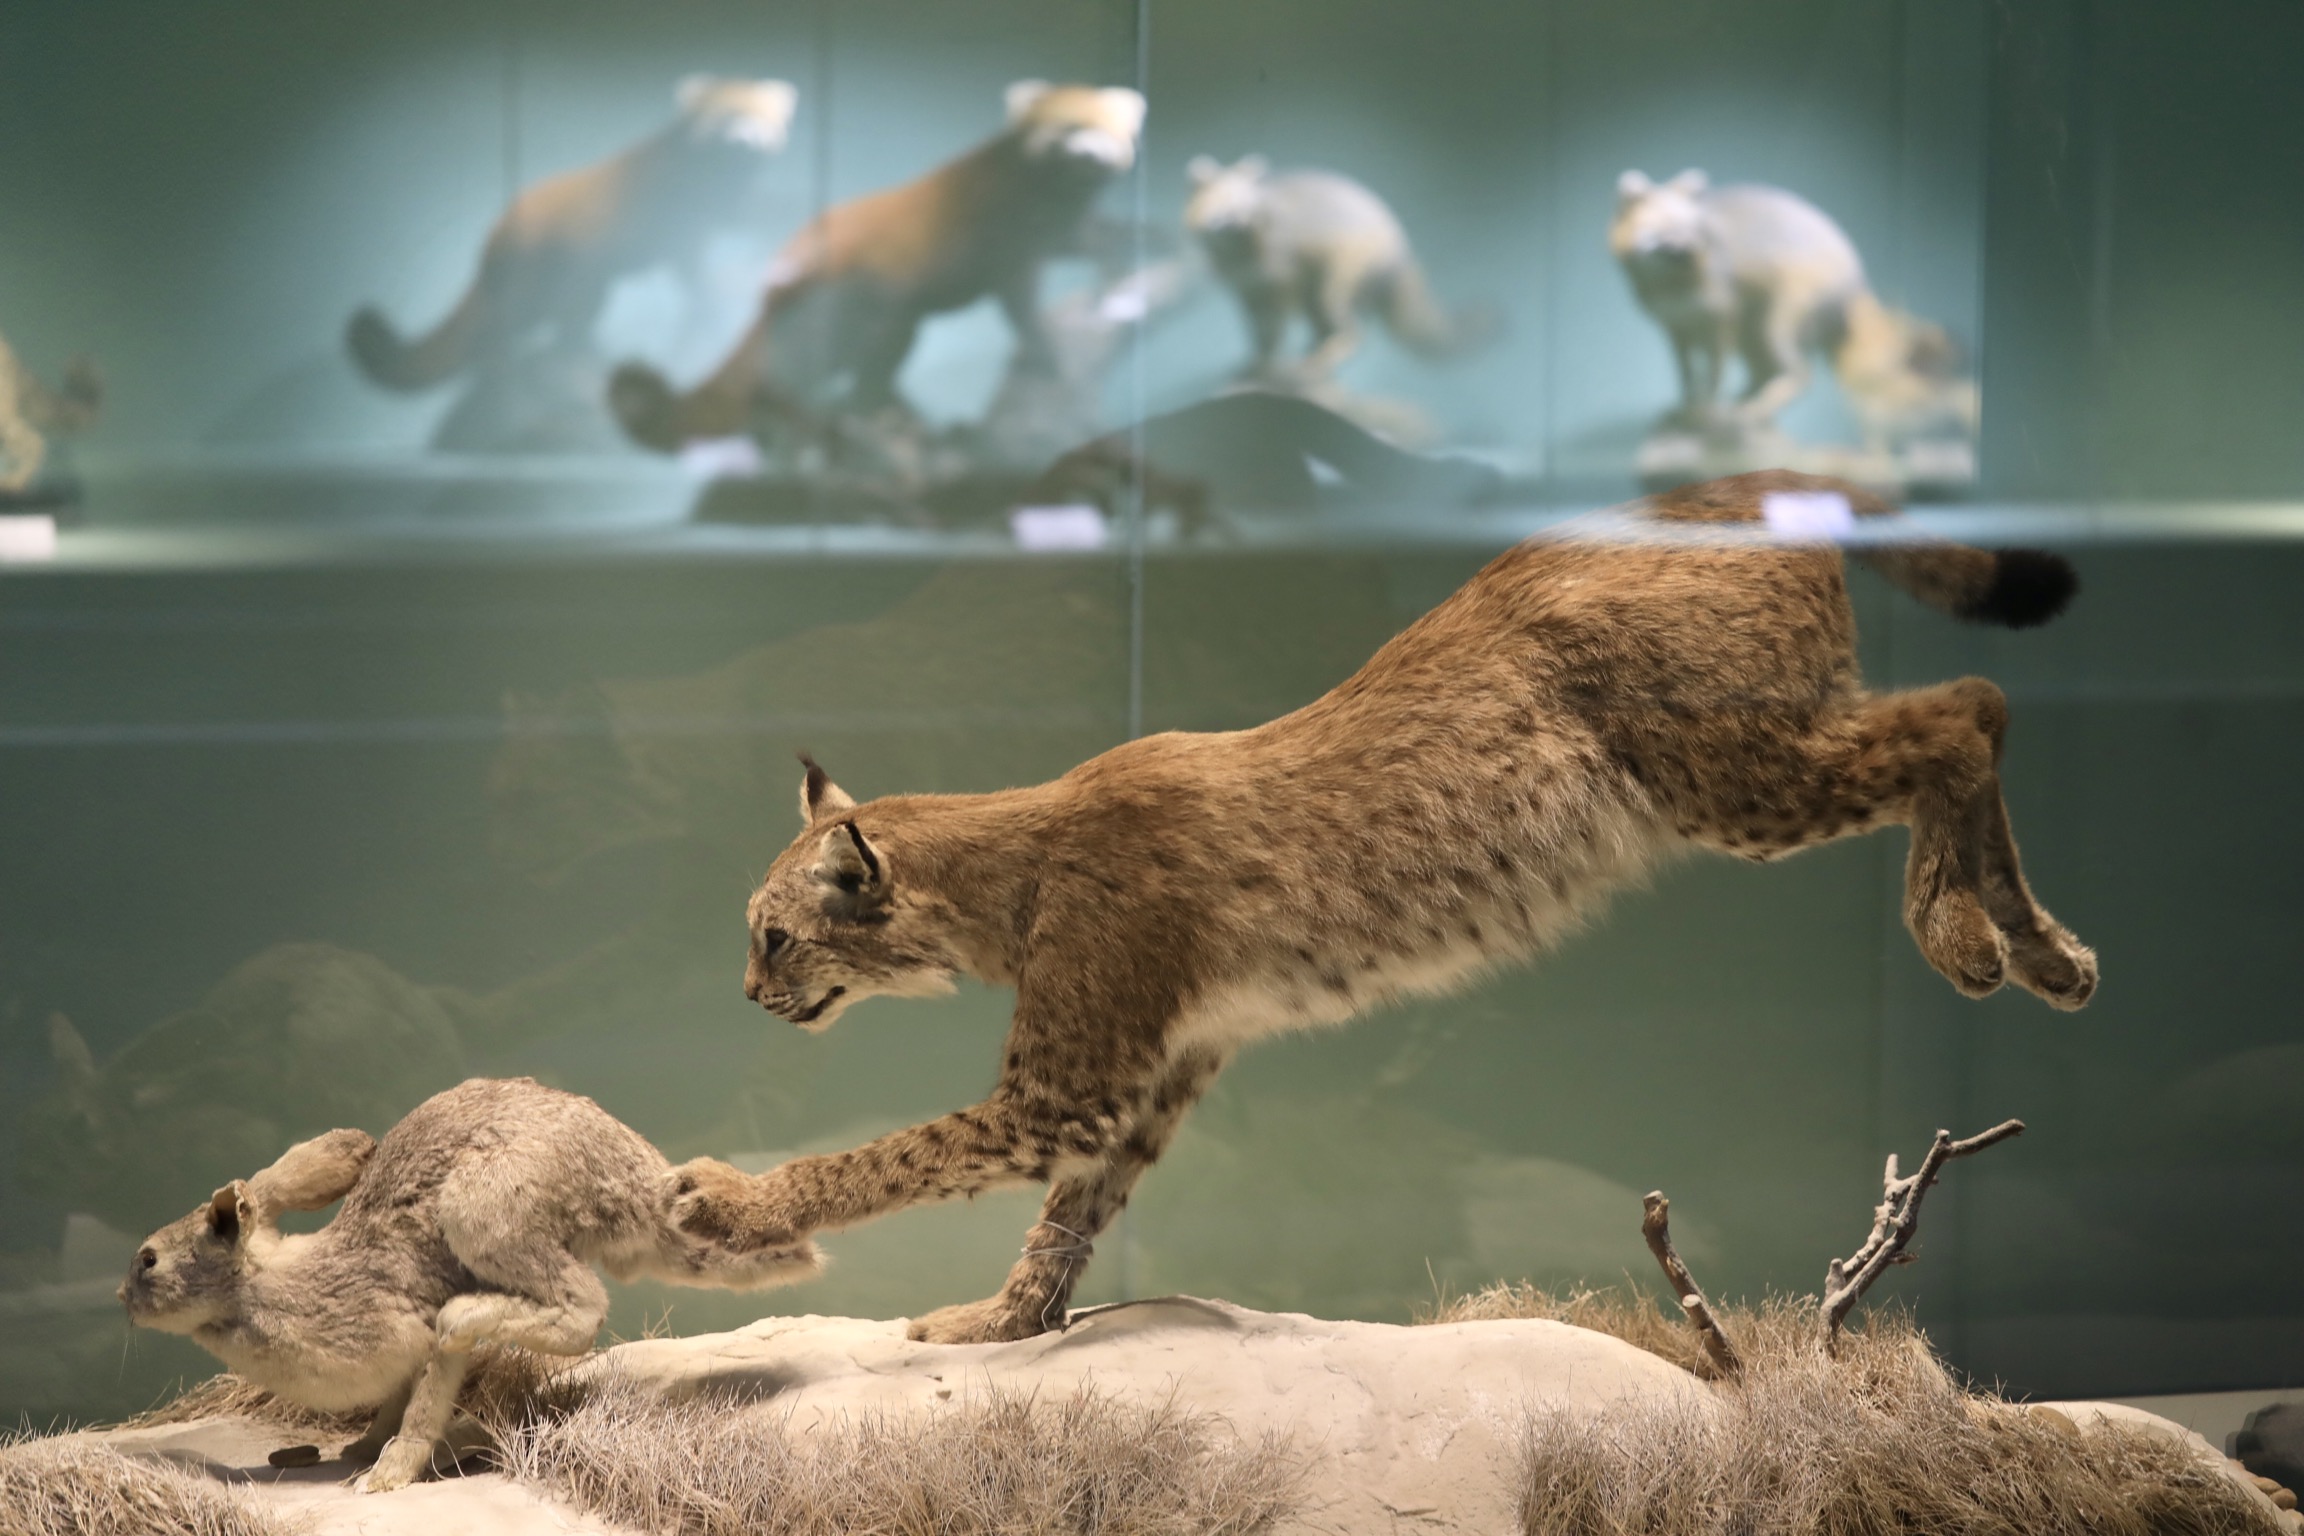 Beijing exhibit reveals wildlife diversity in China